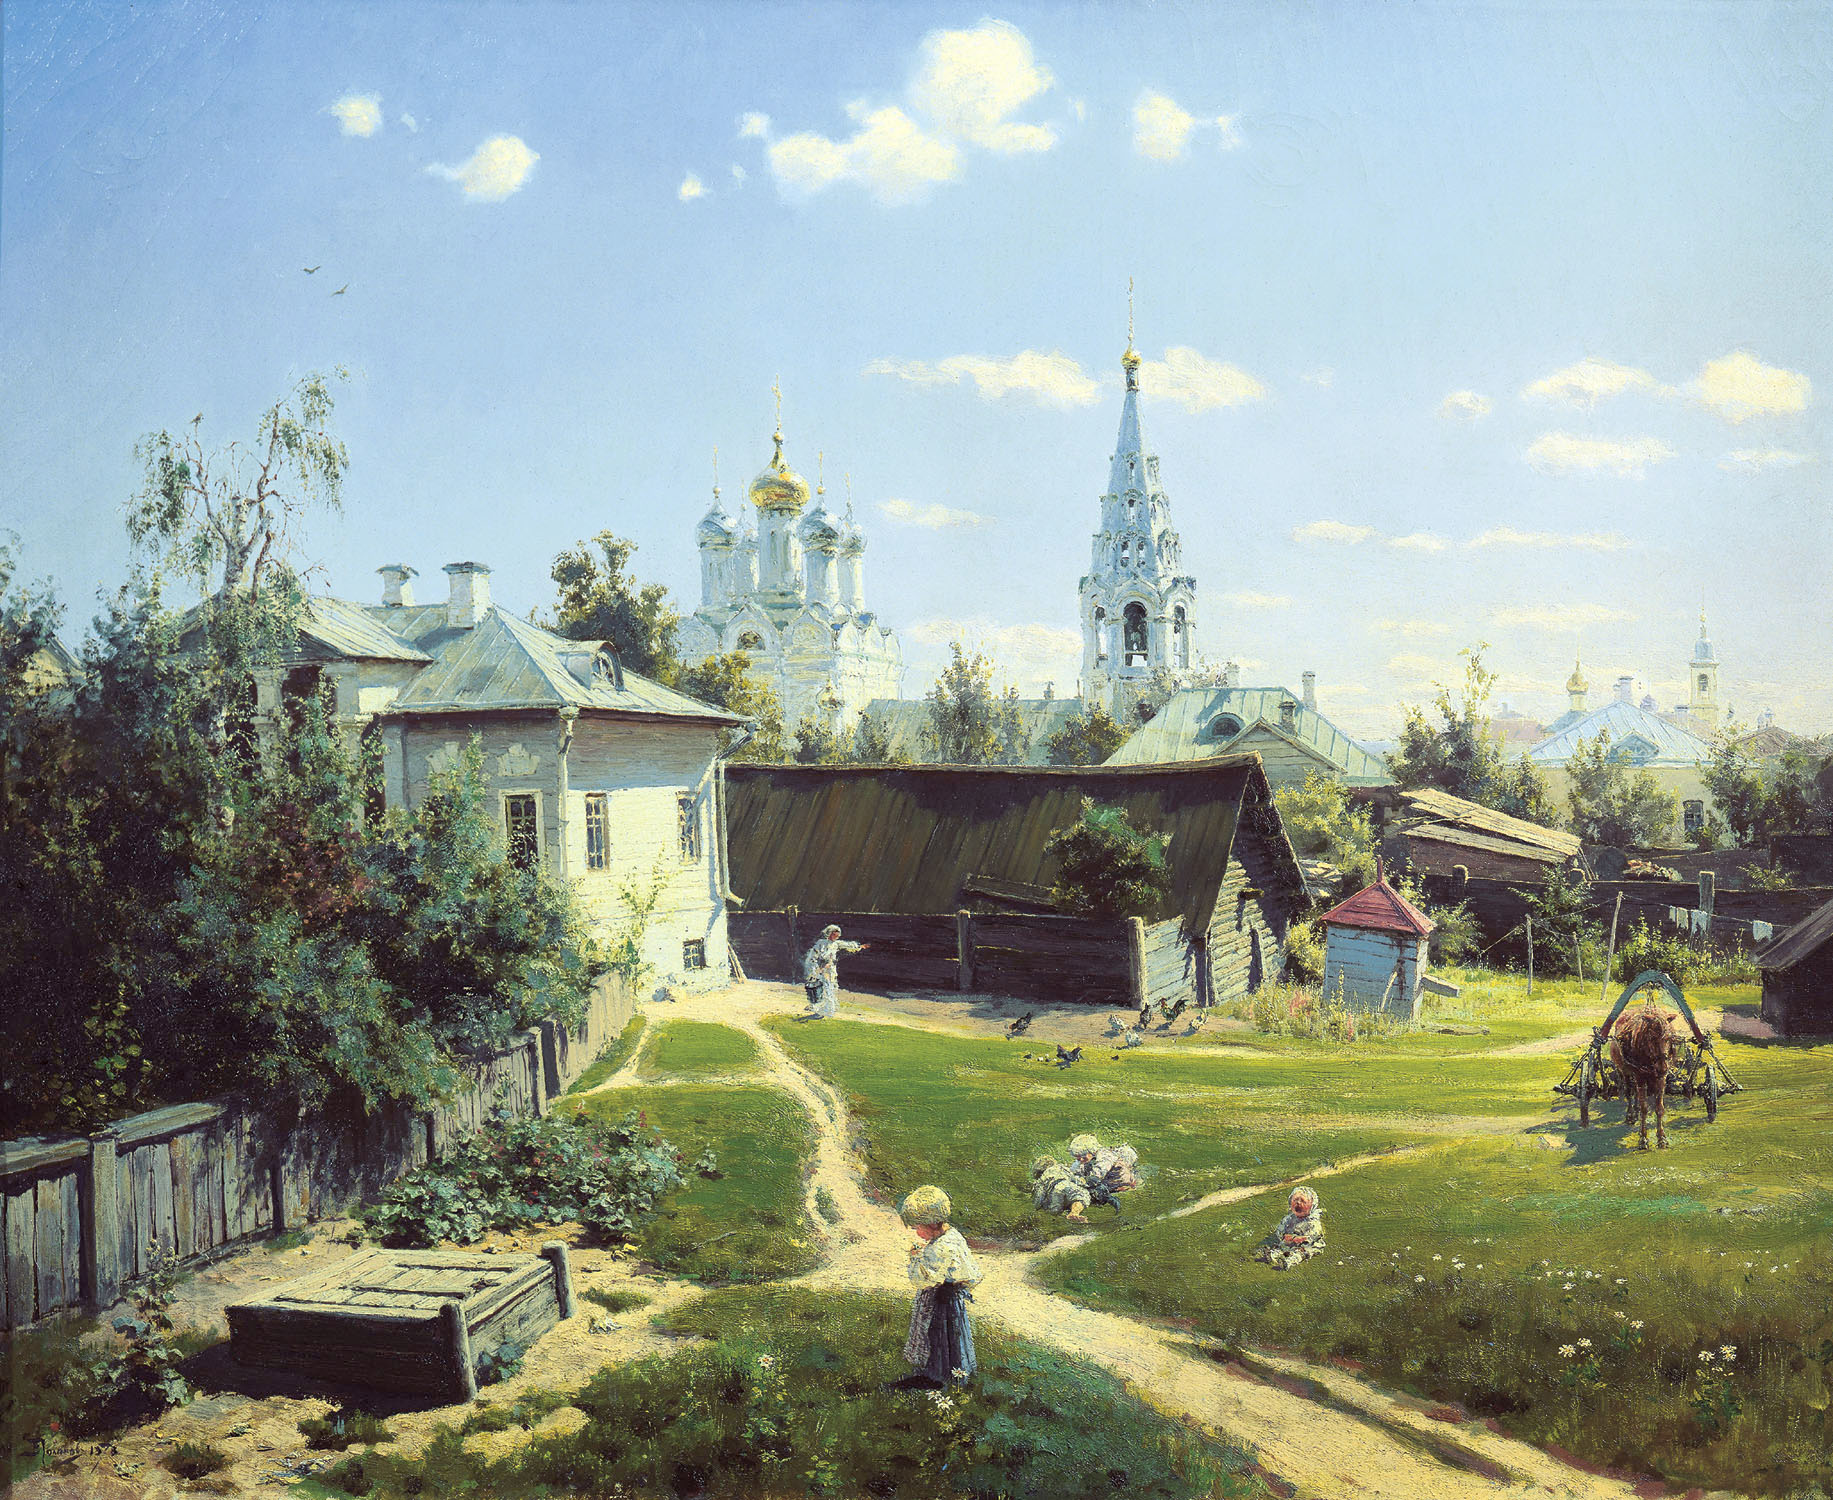 Василий Дмитриевич Поленов. "Московский дворик". 1878.